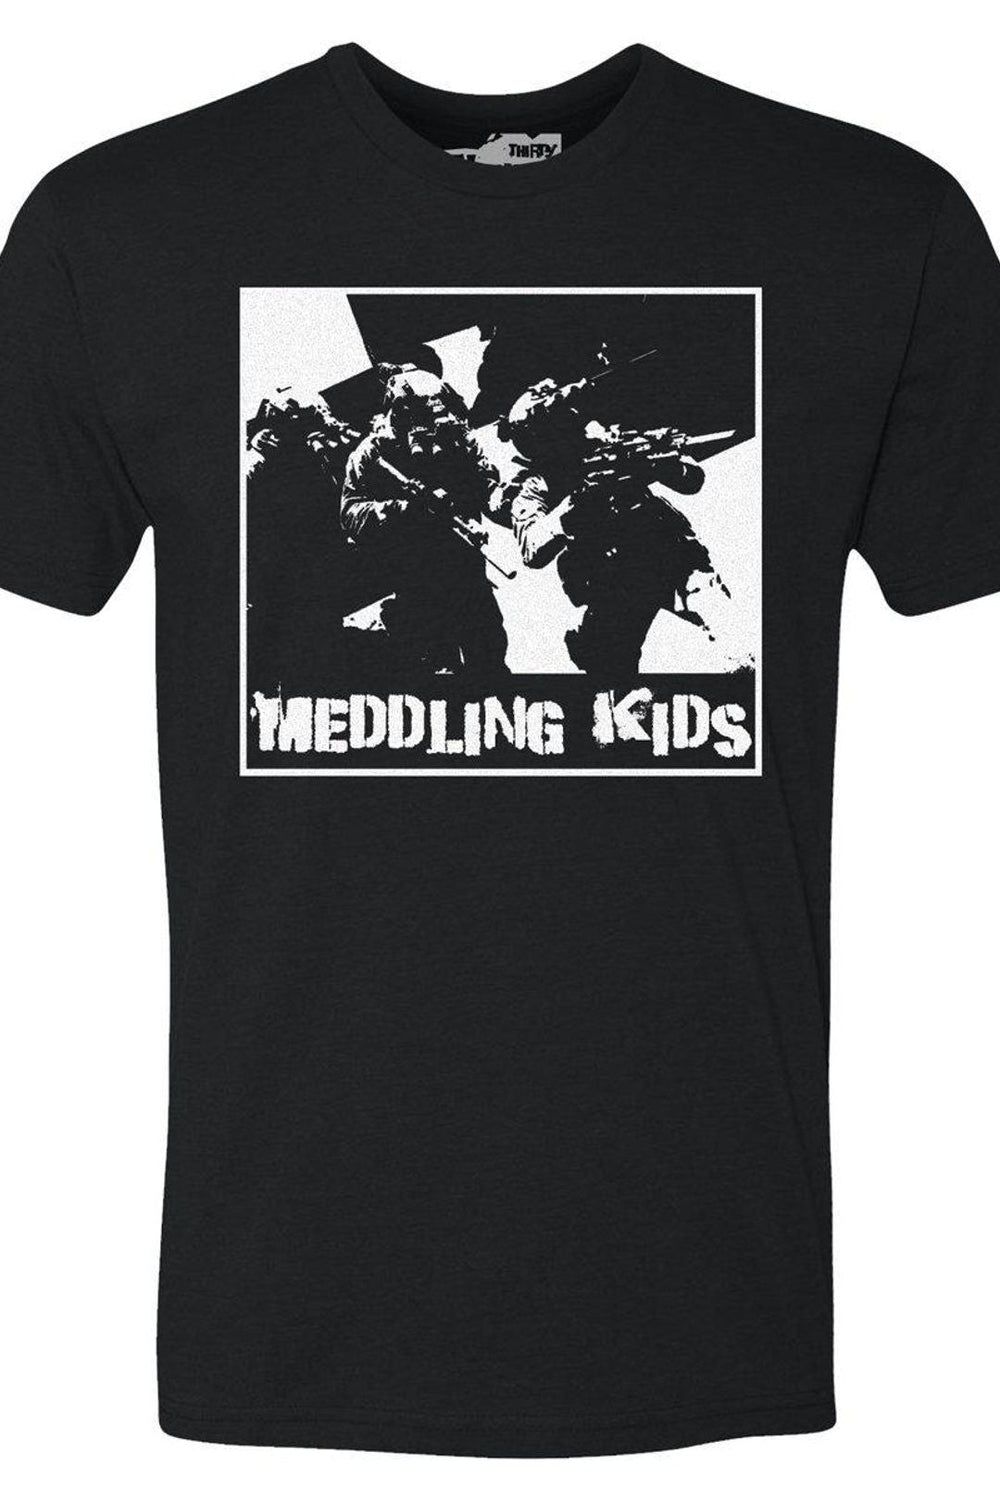 T-Shirt Meddling Kids | S4 Supplies